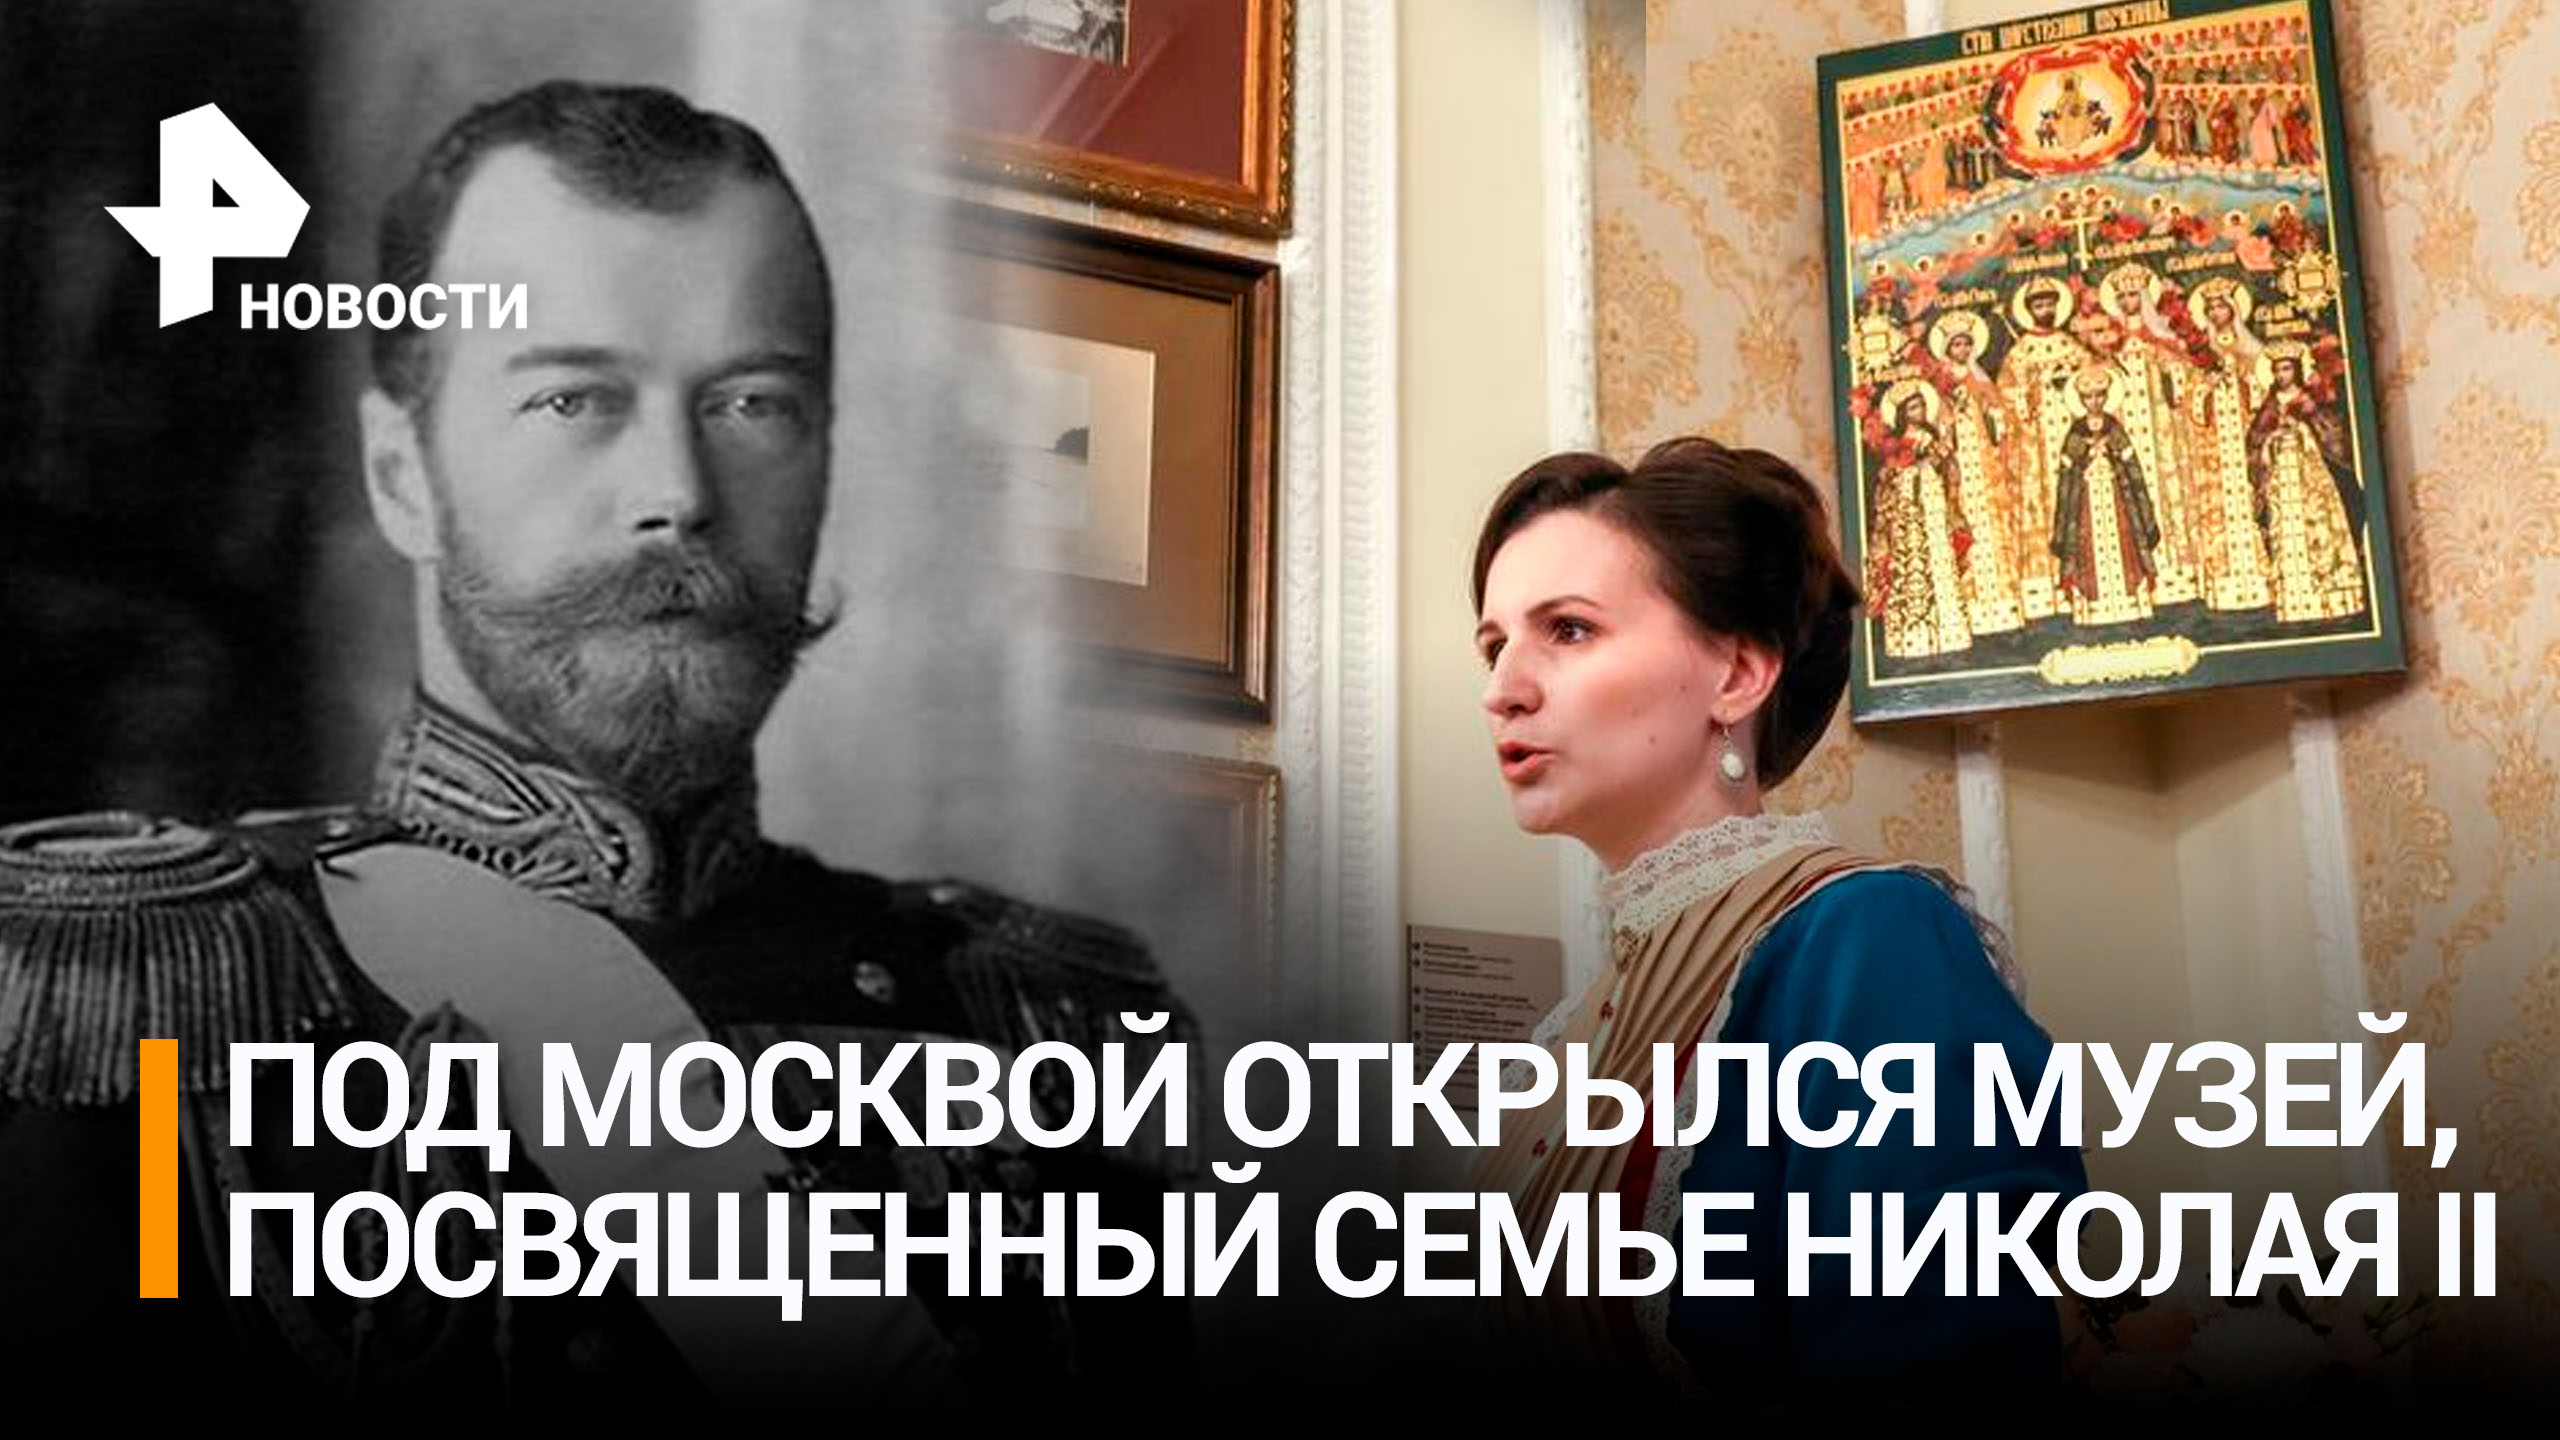 В Подмосковье открылся музей, посвященный семье Николая II / РЕН Новости